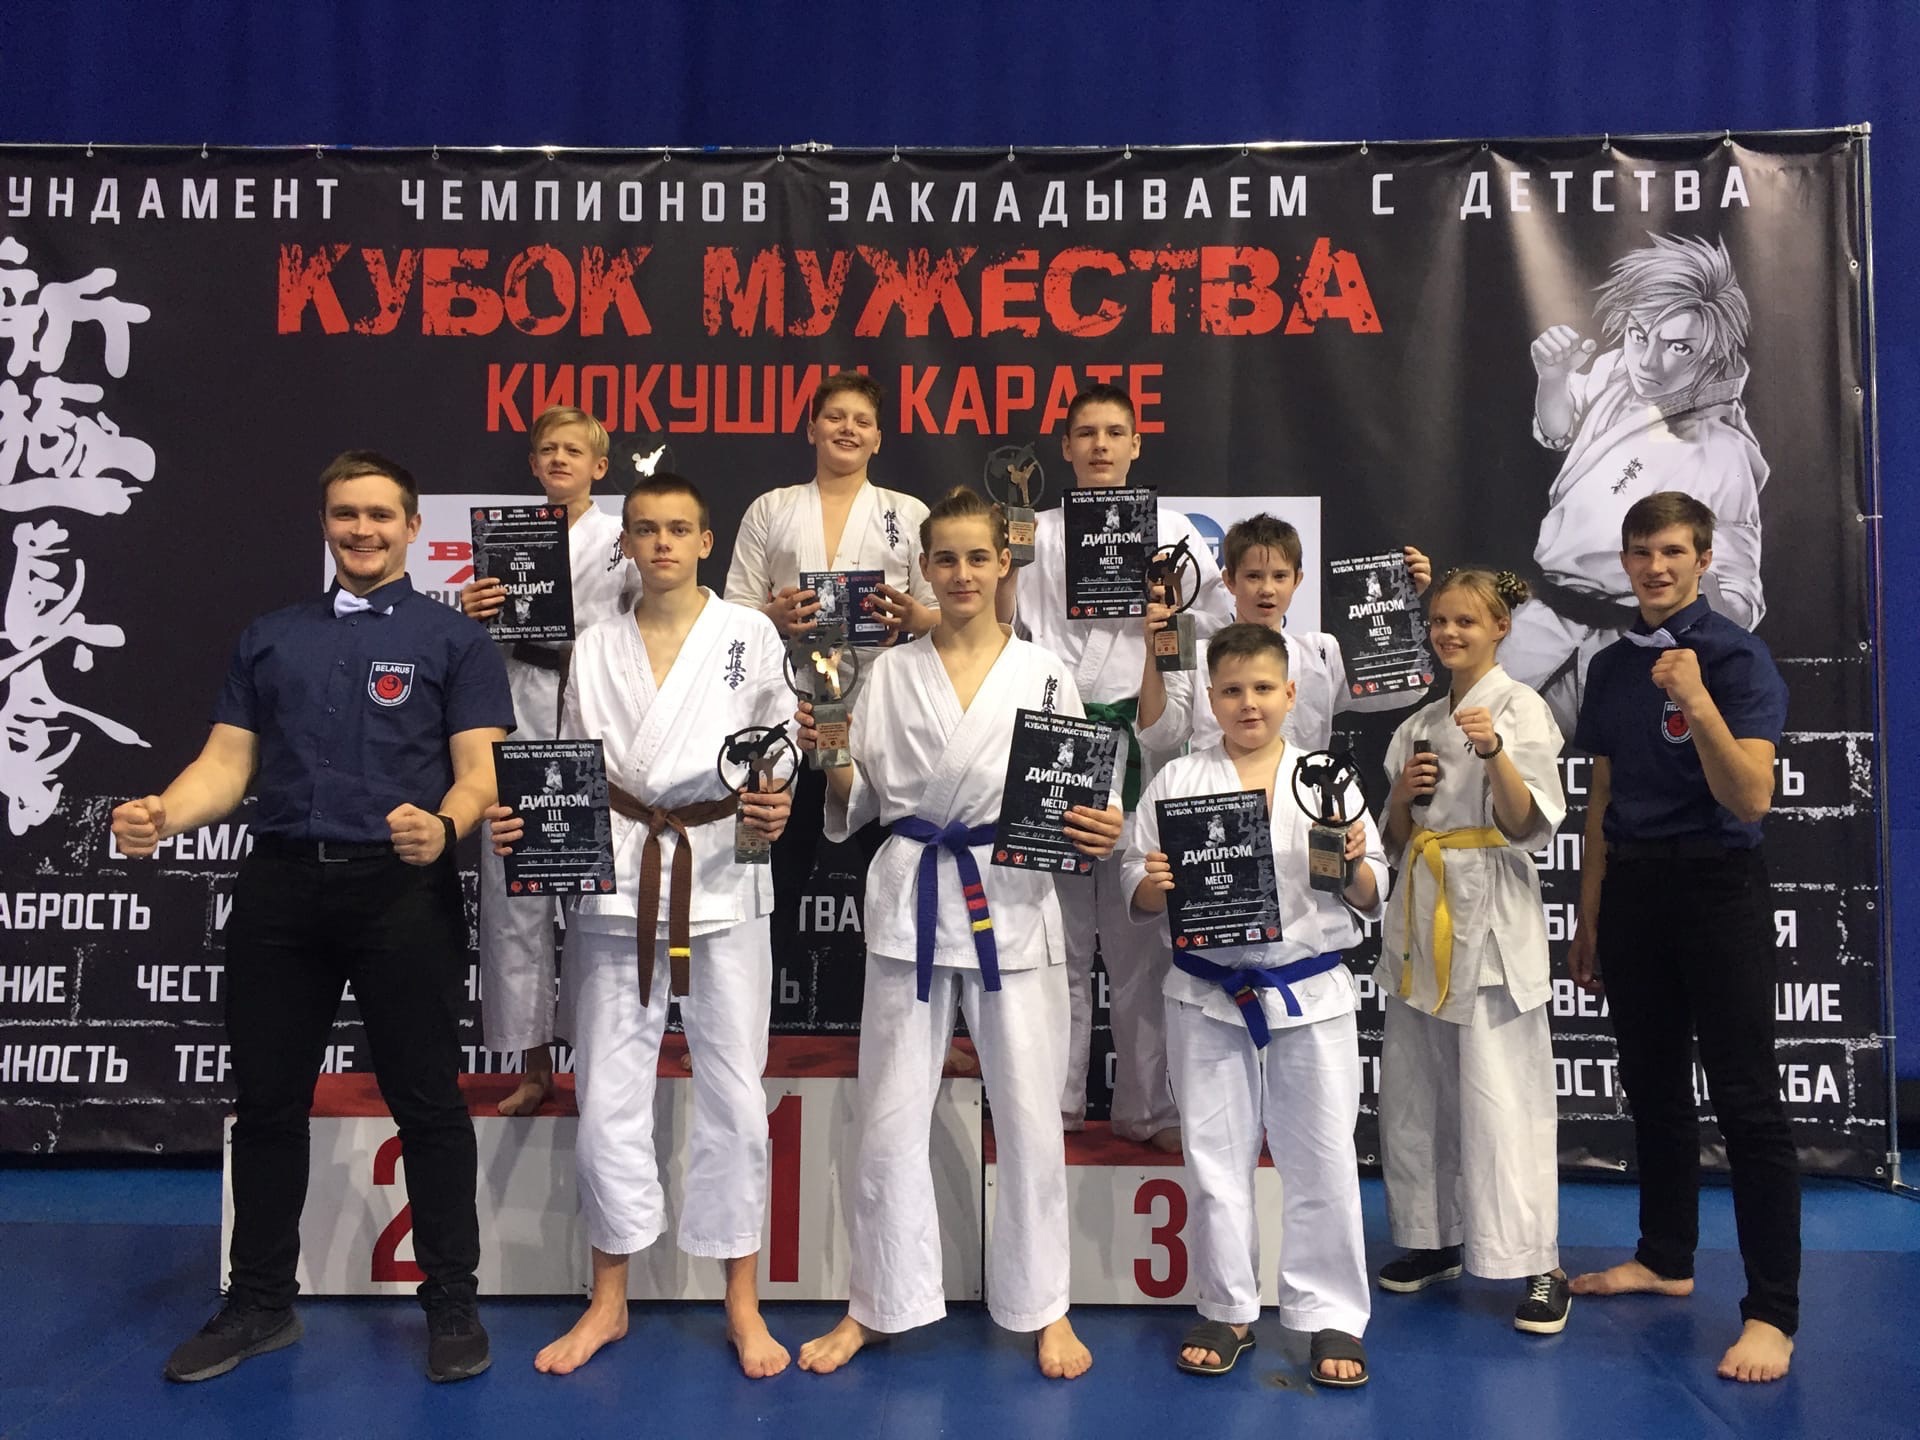 Сморгонские каратисты завоевали медали на «Кубке мужества»